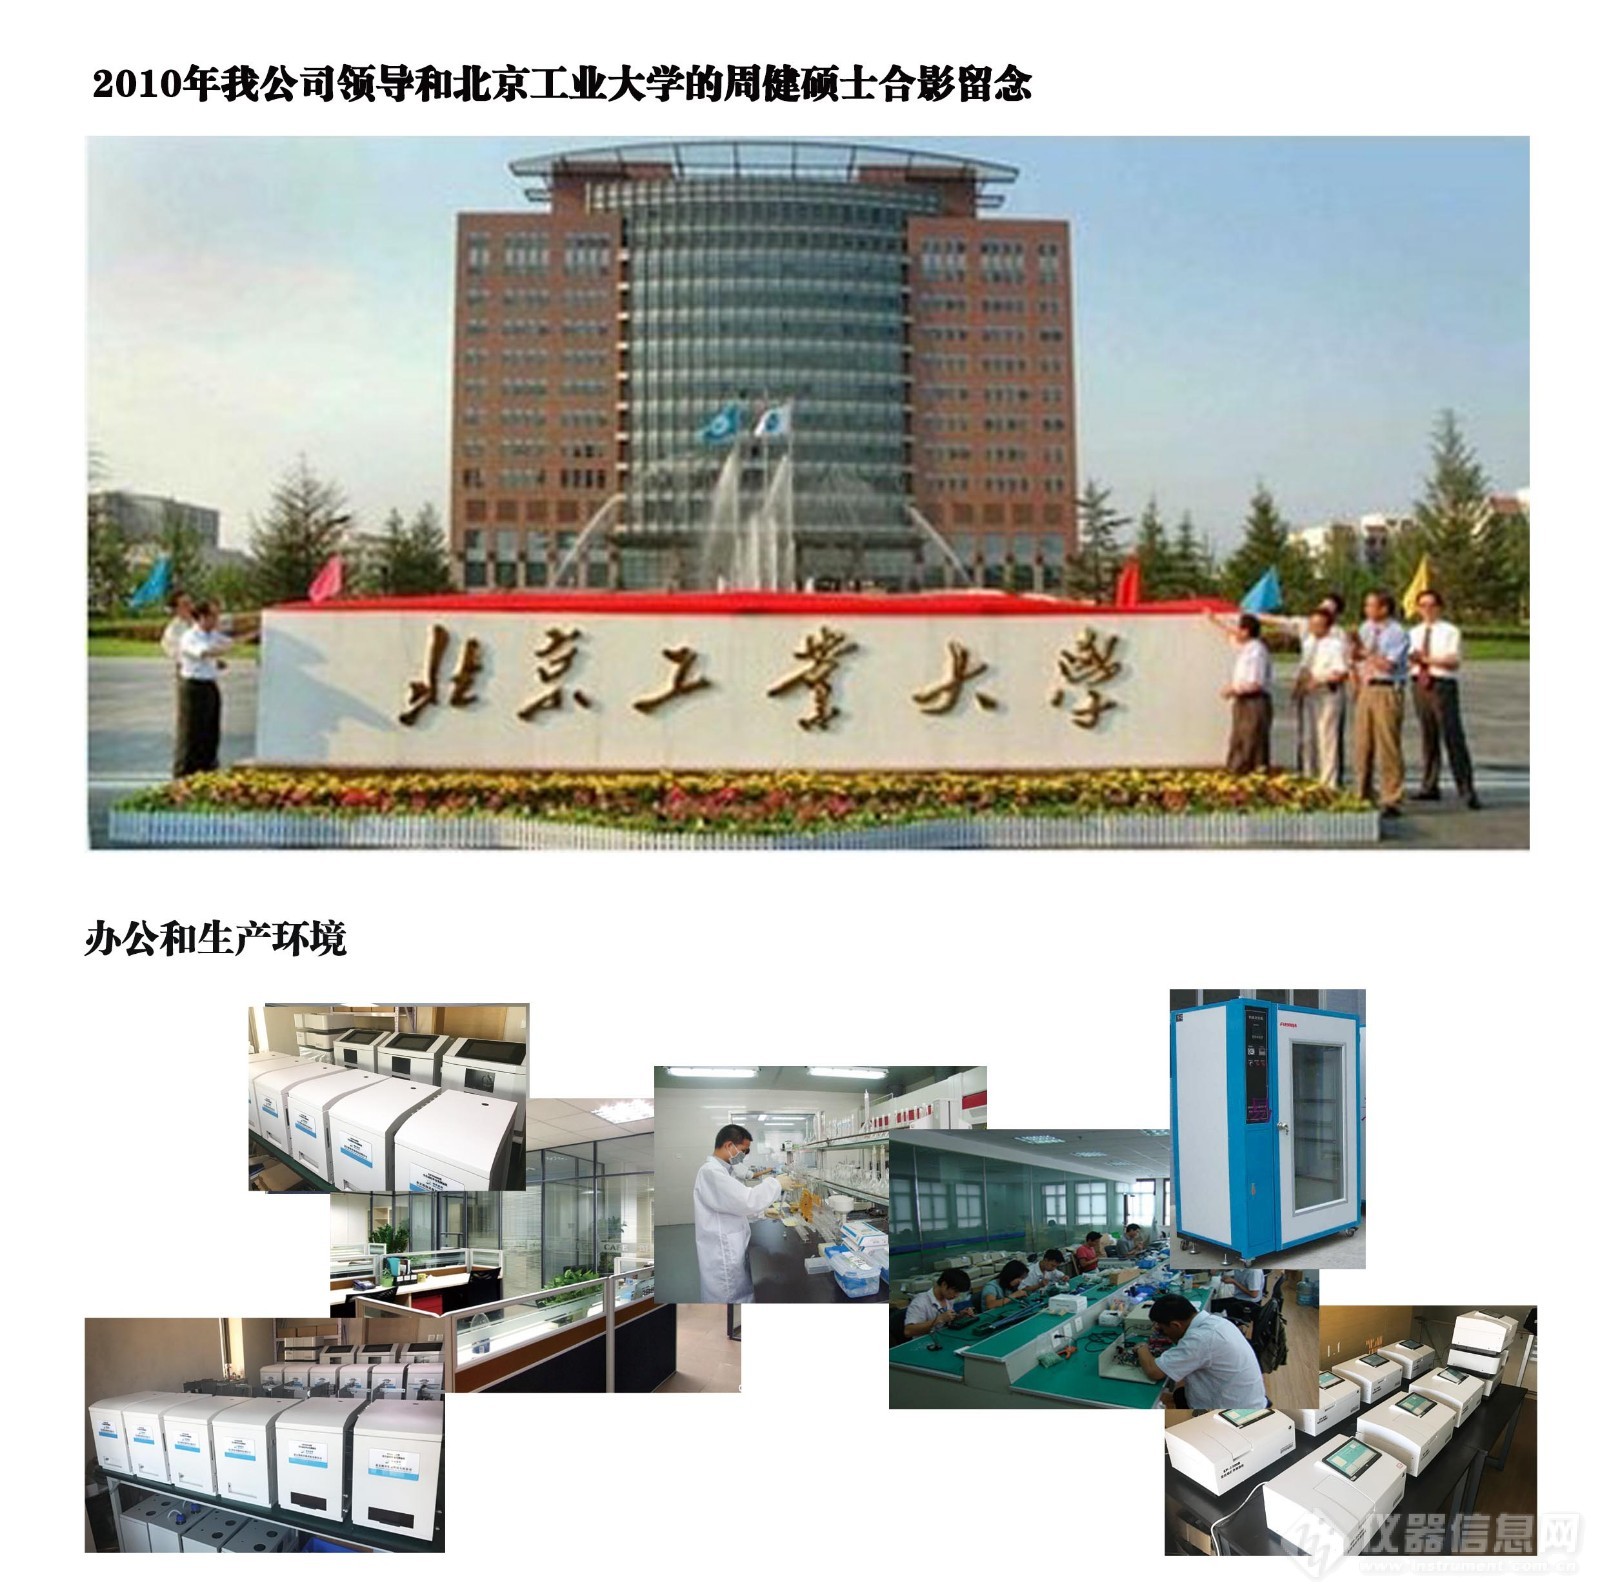 北京工业大学和办公环境.jpg